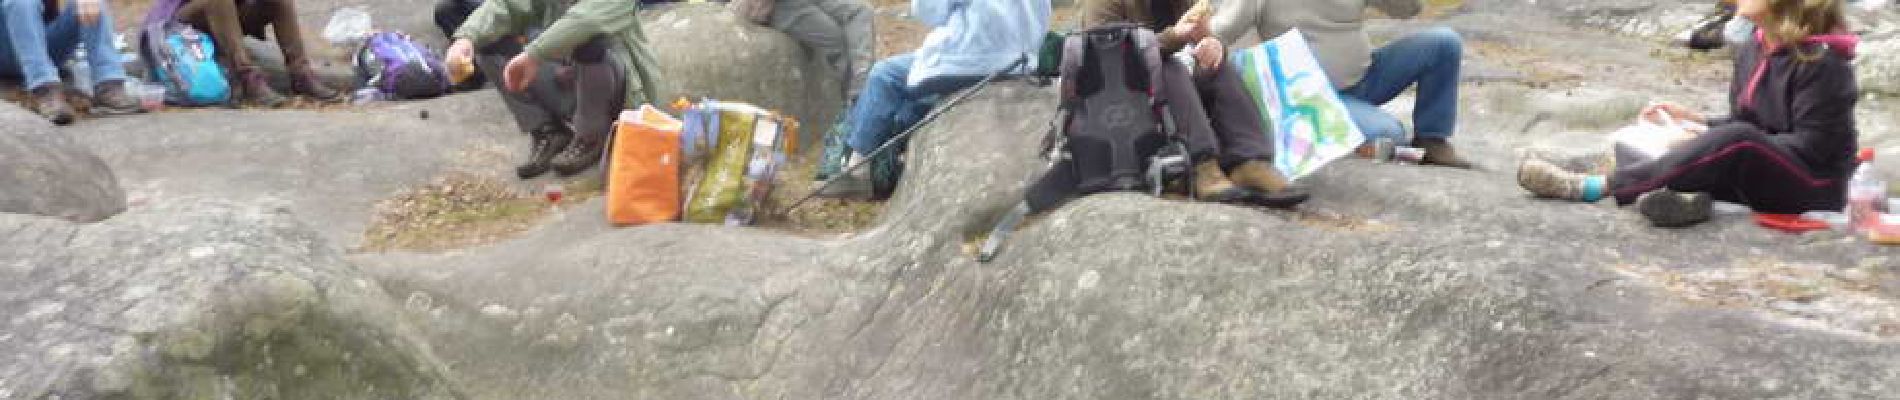 POI Fontainebleau - 03 - Le pique-nique, tous étalés sur une belle plate-forme rocheuse - Photo